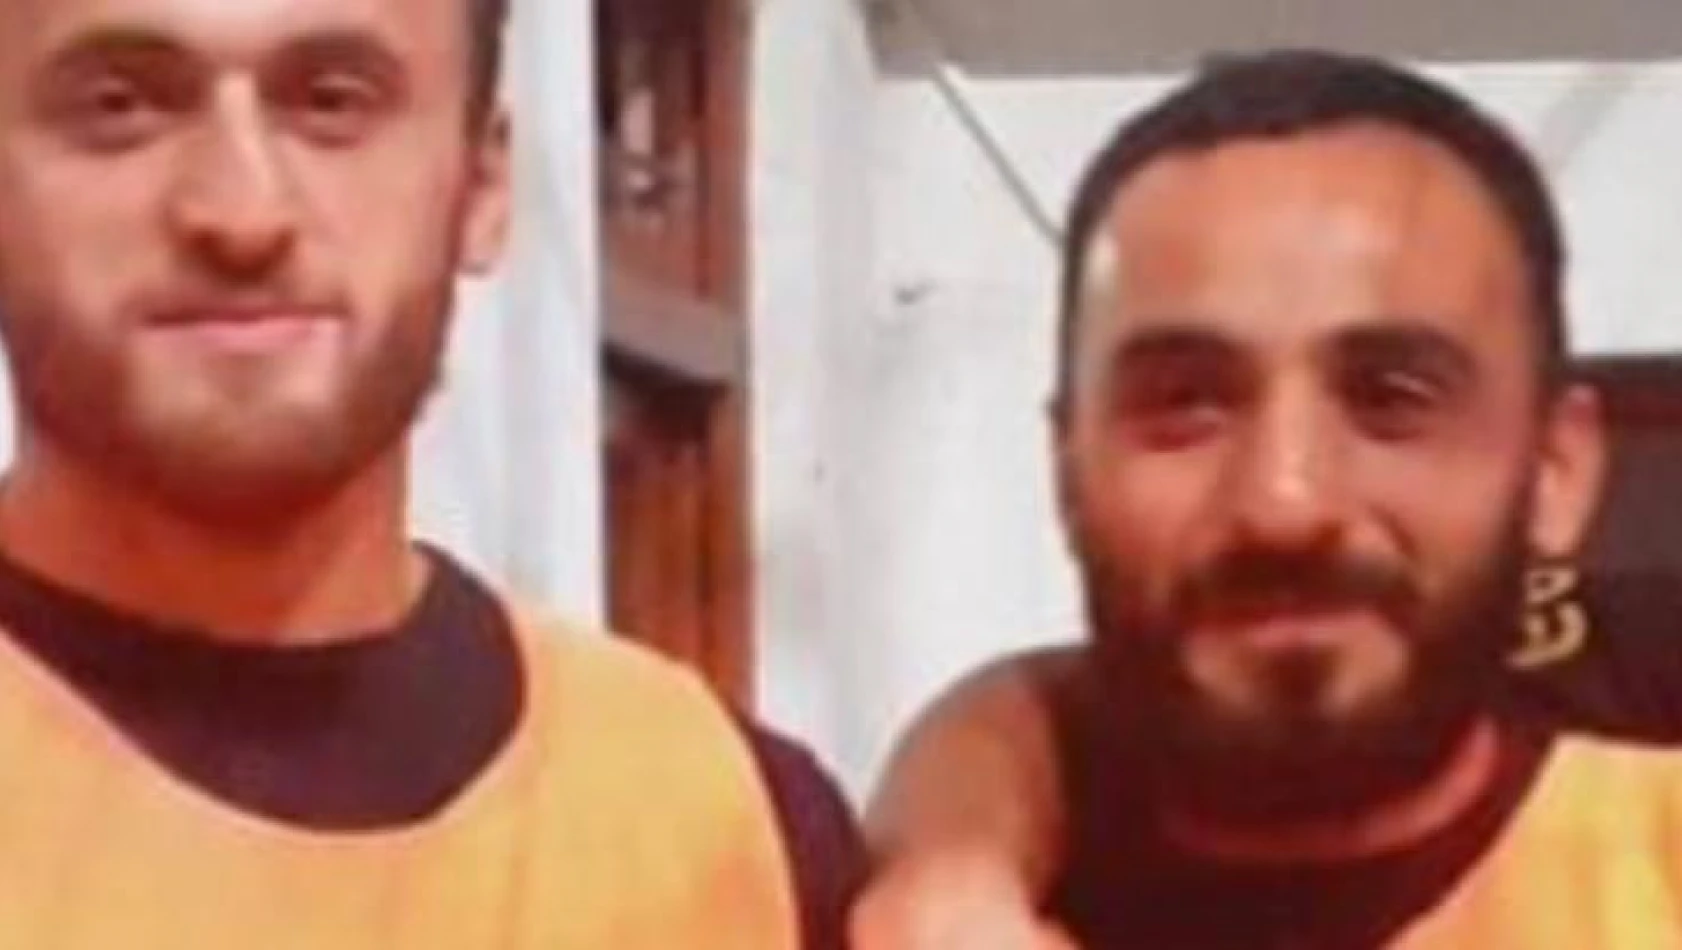 Artvin'de yasak aşk cinayetinde ölen 3 Gürcü vatandaşının kimlikleri beli oldu